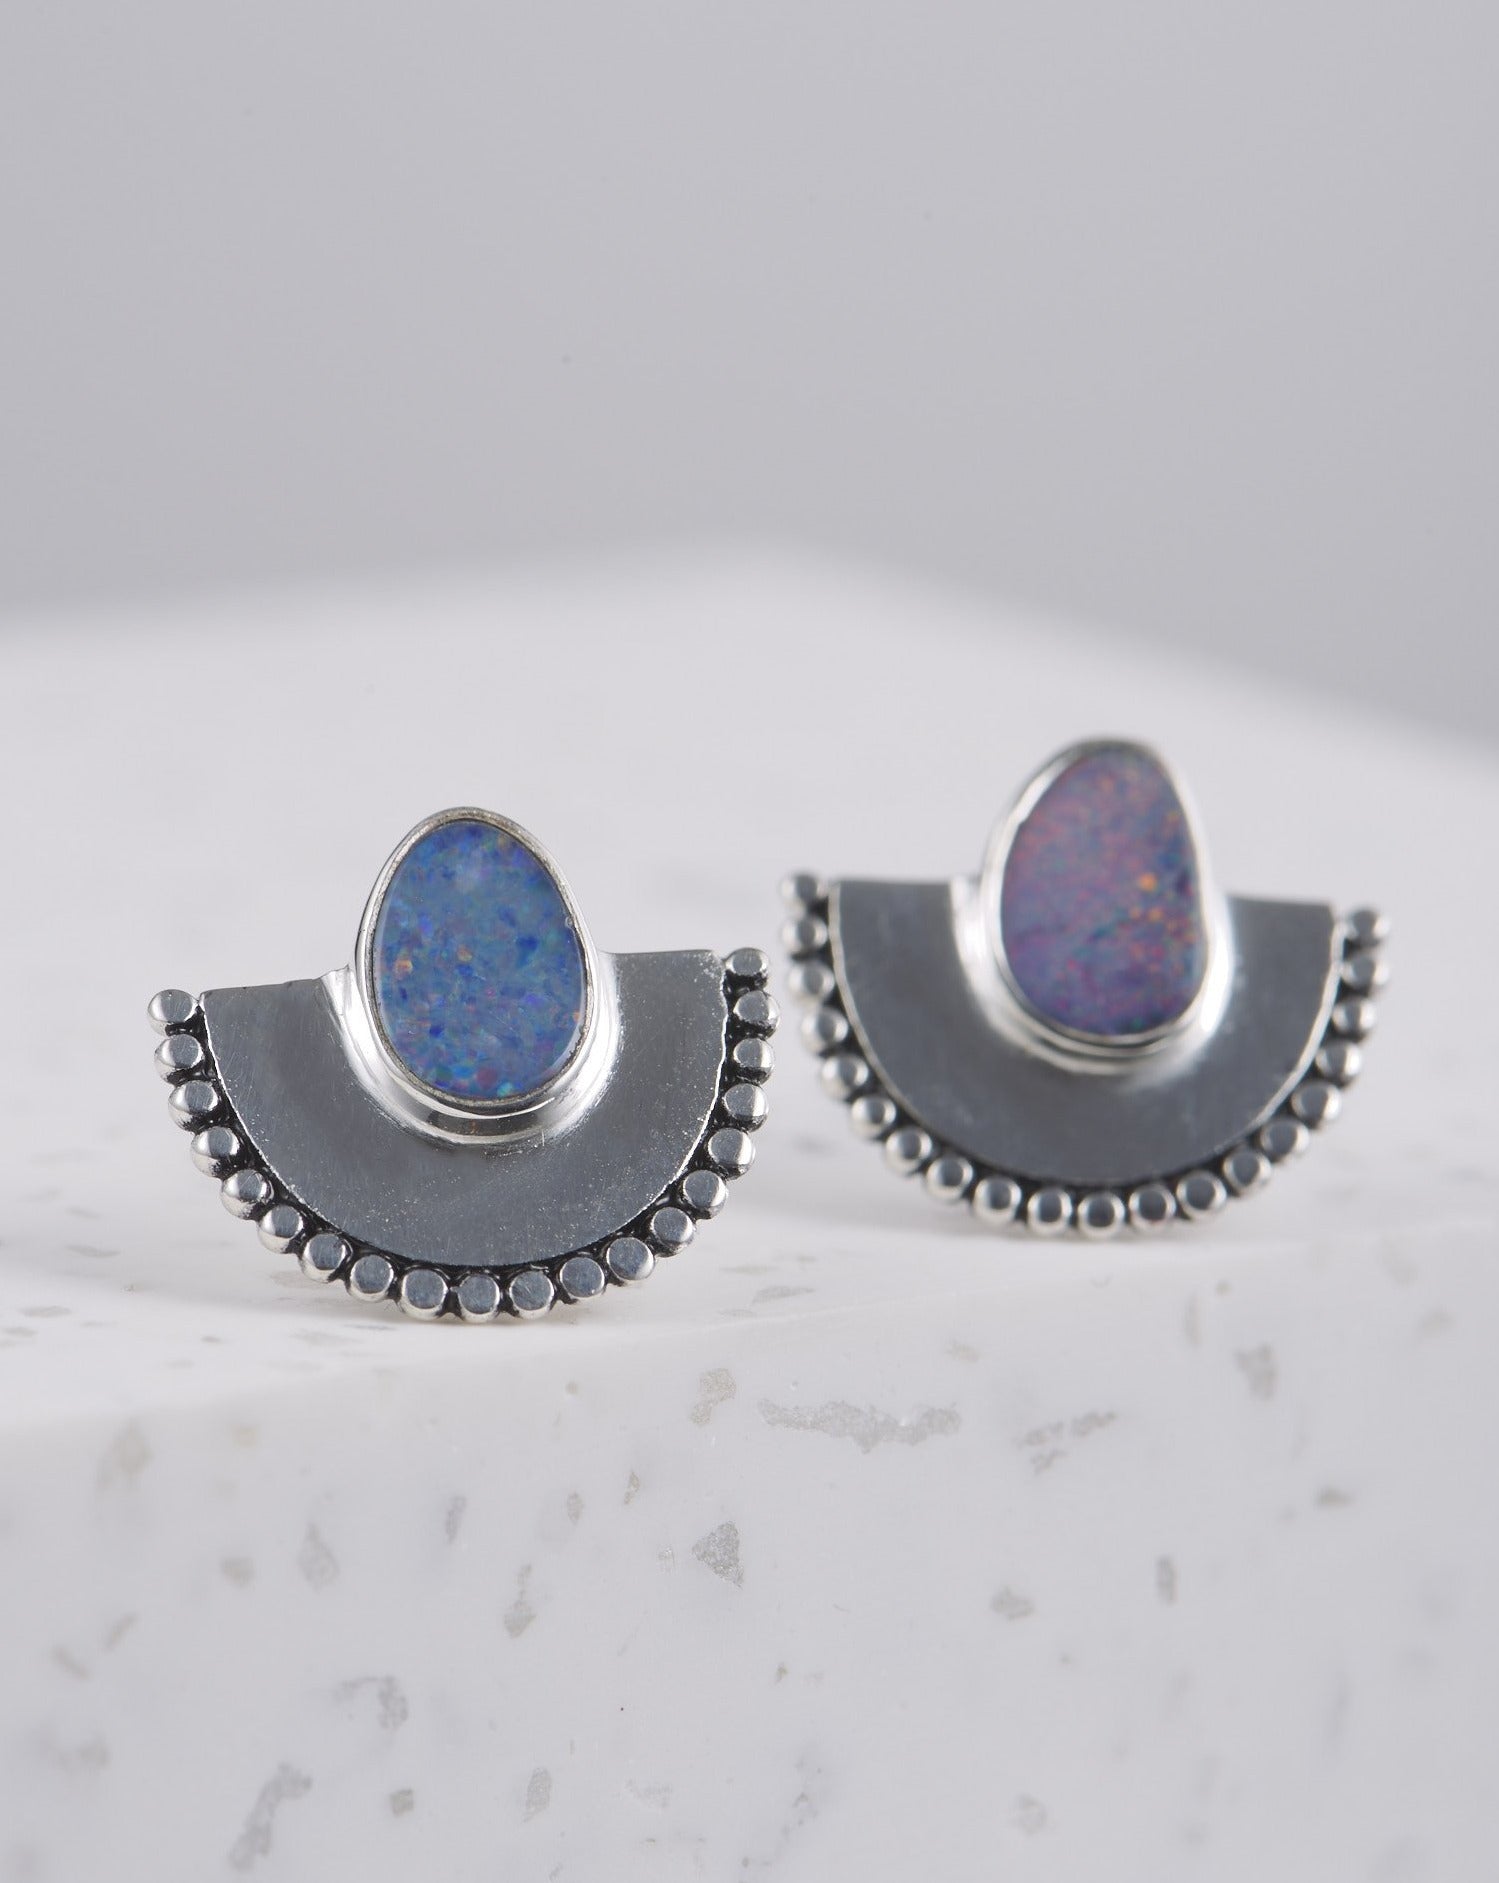 Handgemachte Ohrringe mit Opal Steinen | 925 Silber - wasserfest | Fair und umweltschonend auf Bali handgefertigt | VERLAN Jewellery | Fairfashion 